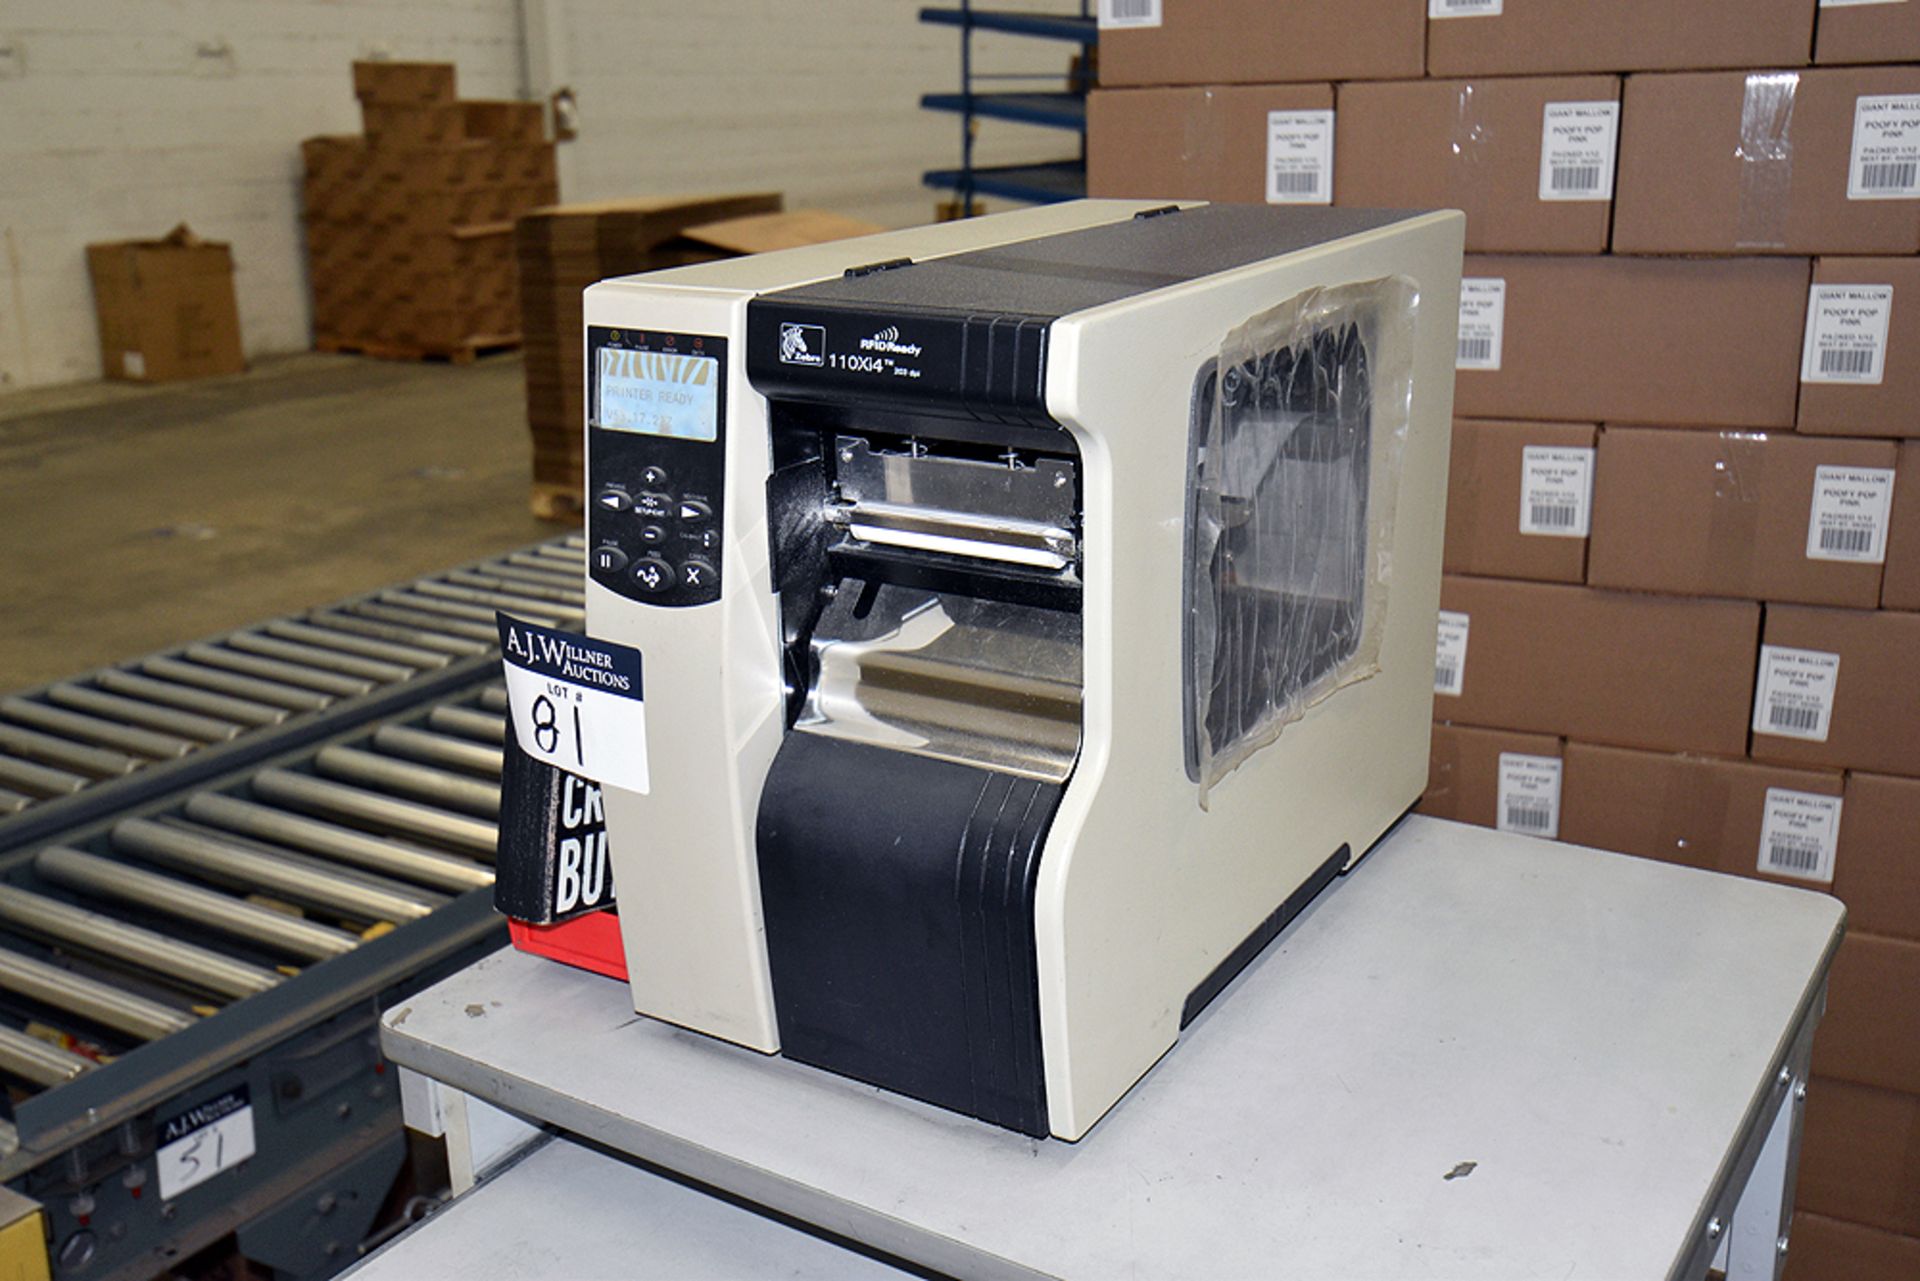 Zebra 110Xi4 Printer w/ Cart